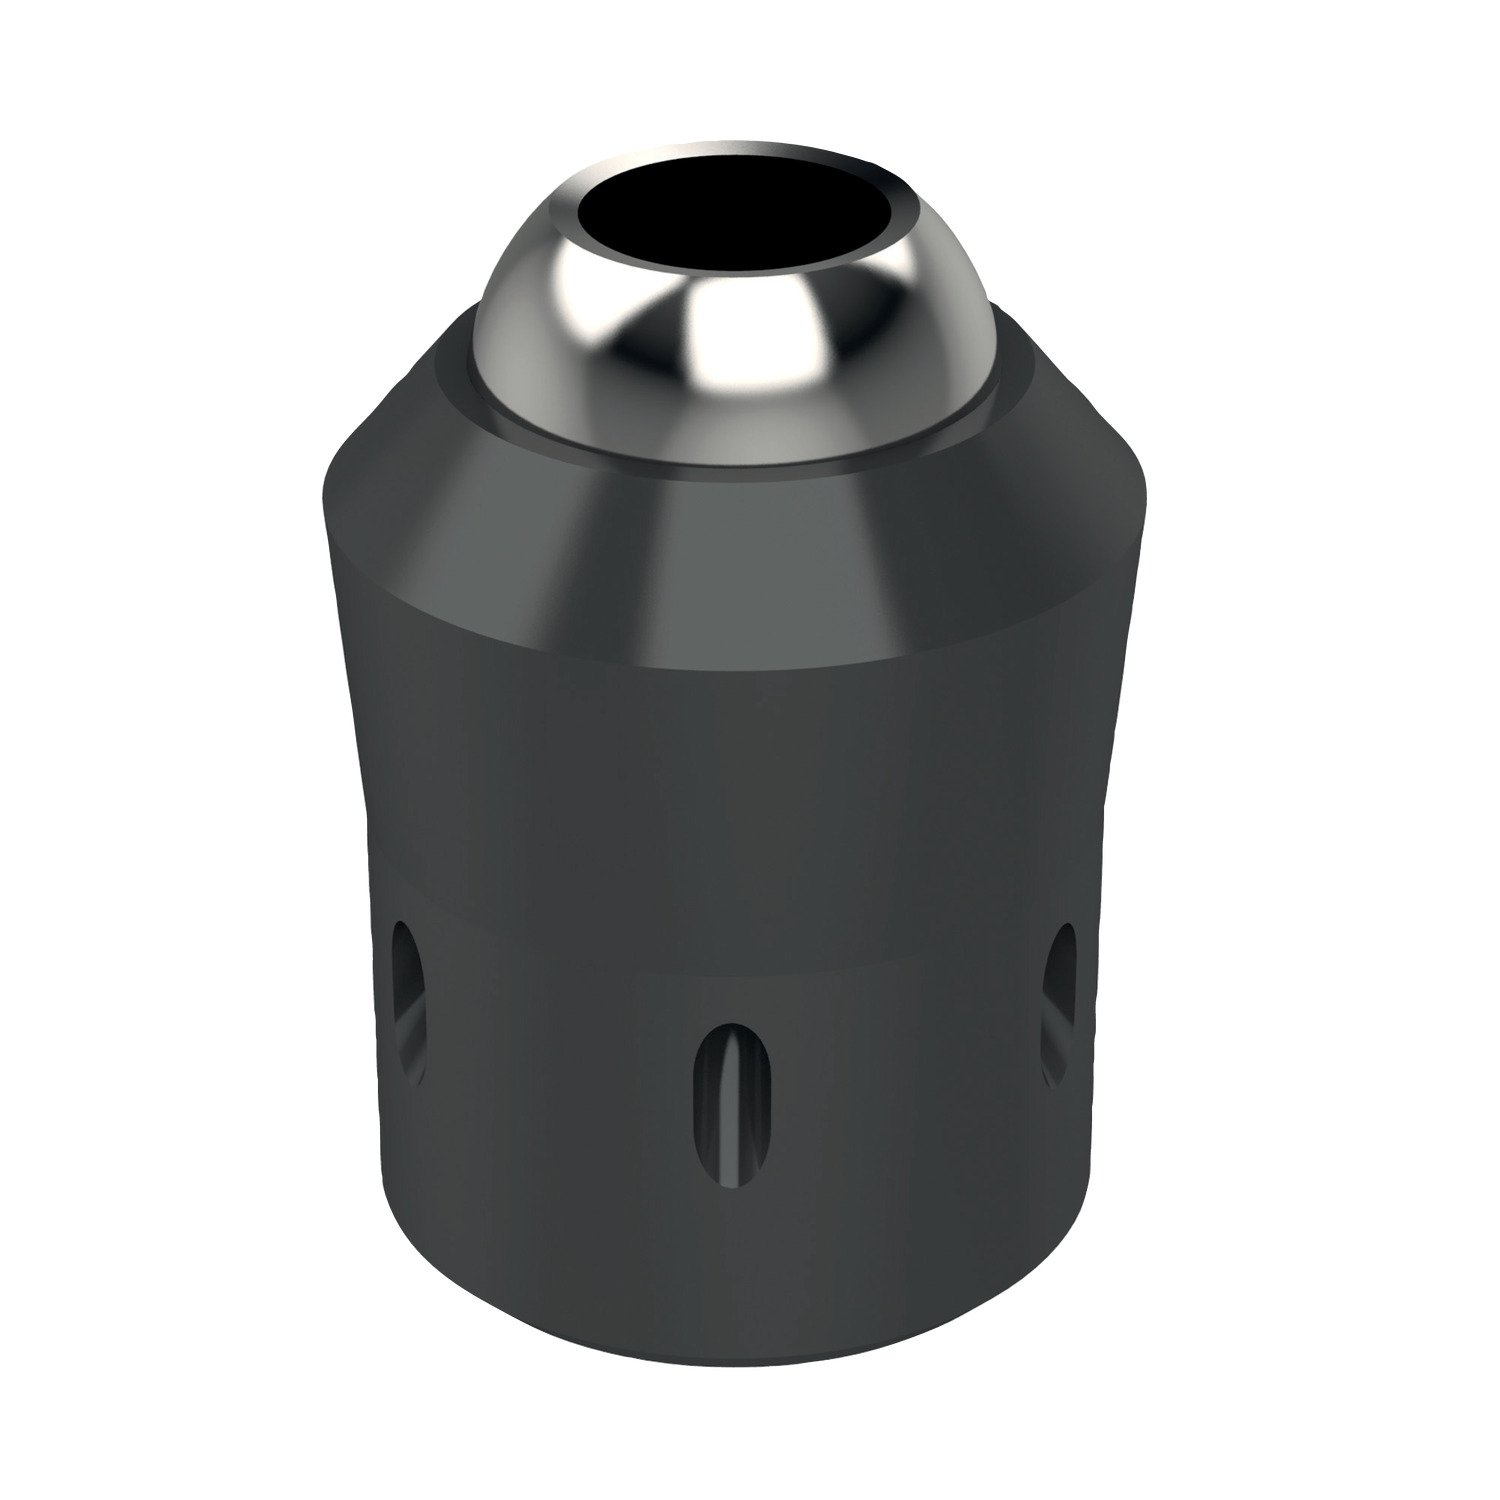 Product 20020, Coolant Nozzles - Plug Jet max. 10 bar / 